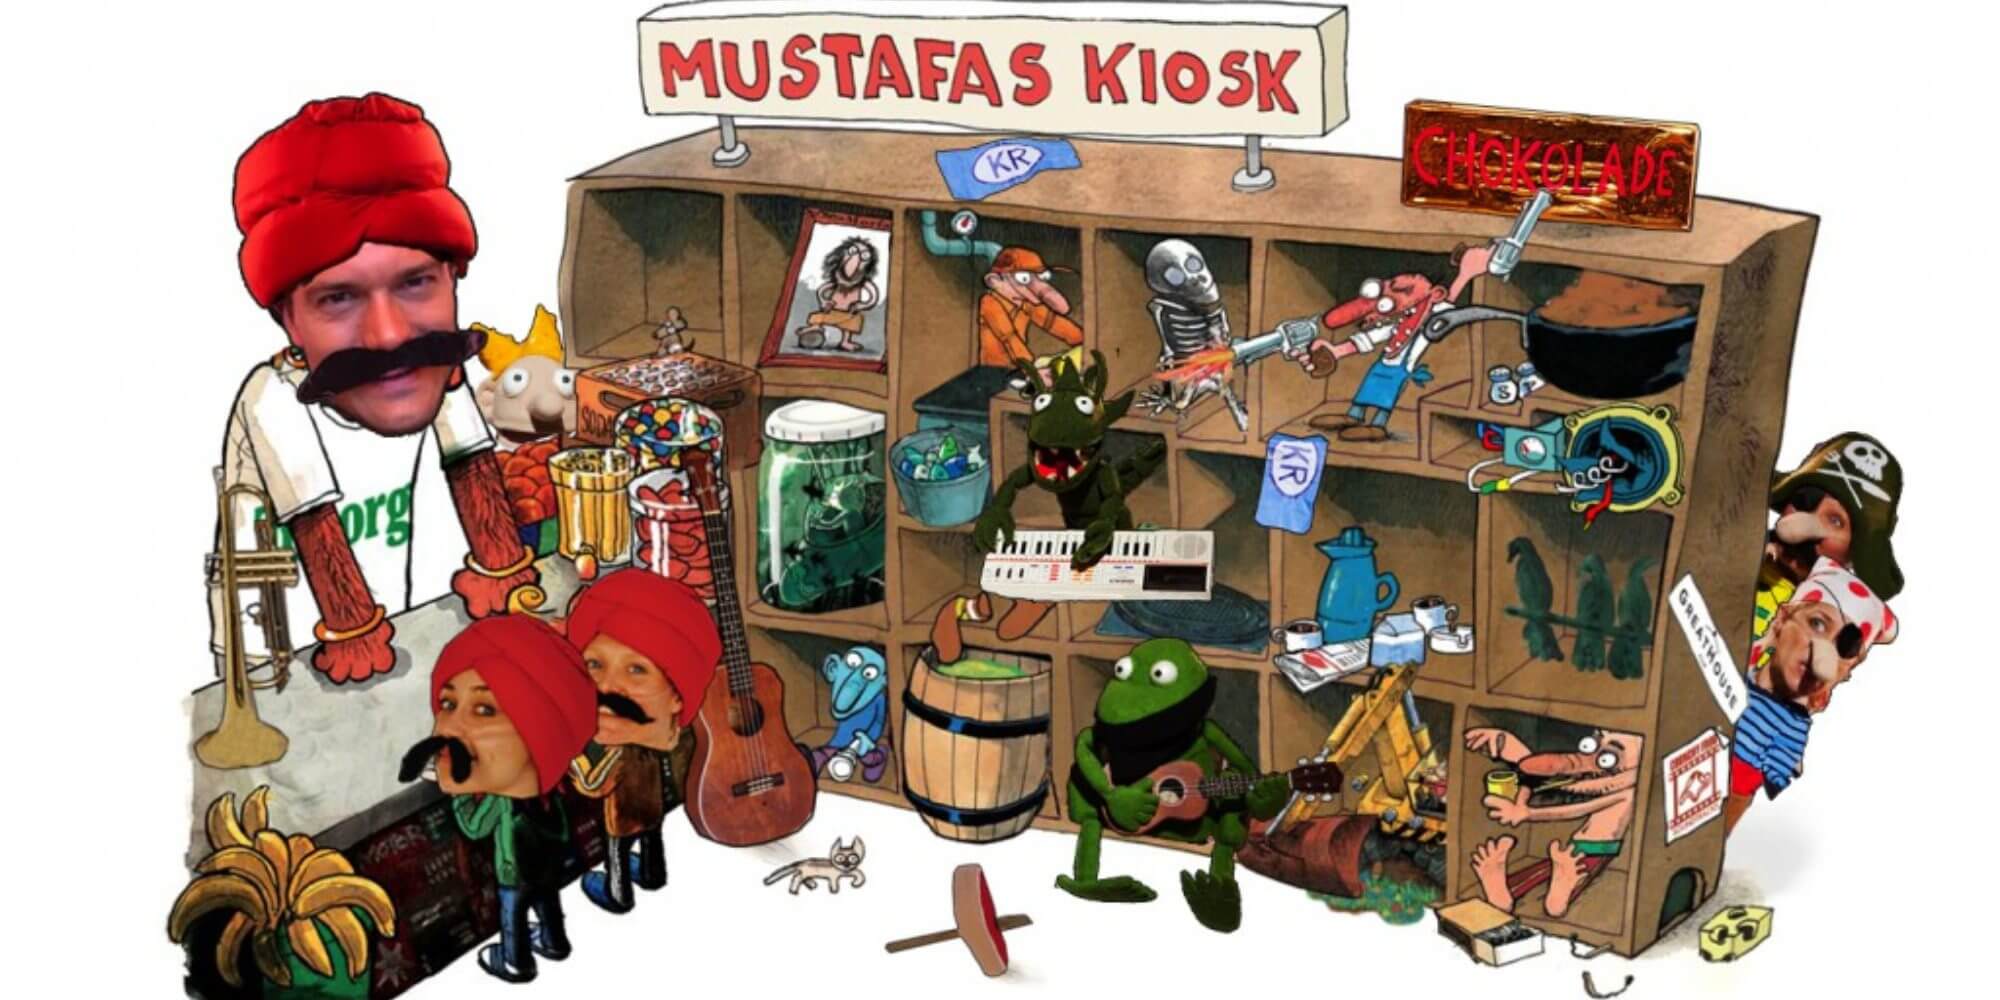 Mustafas Kiosk teaterforestilling for børn | FOF Københavns Omegn